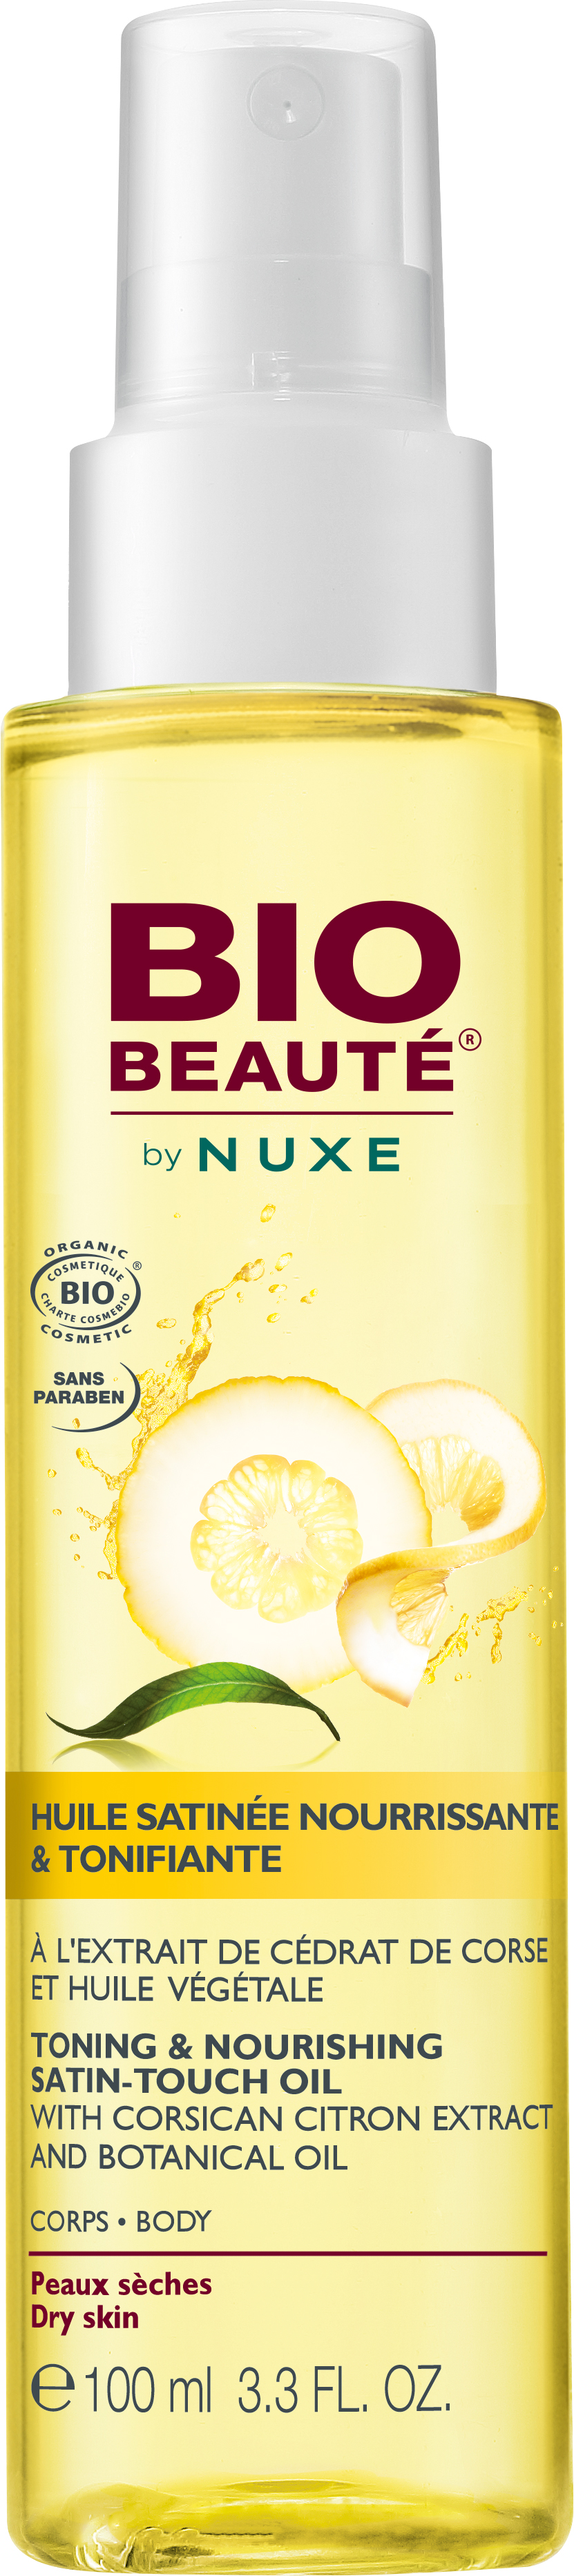 Bio Beauté Body Toning & Nourishing Satin Touch Oil